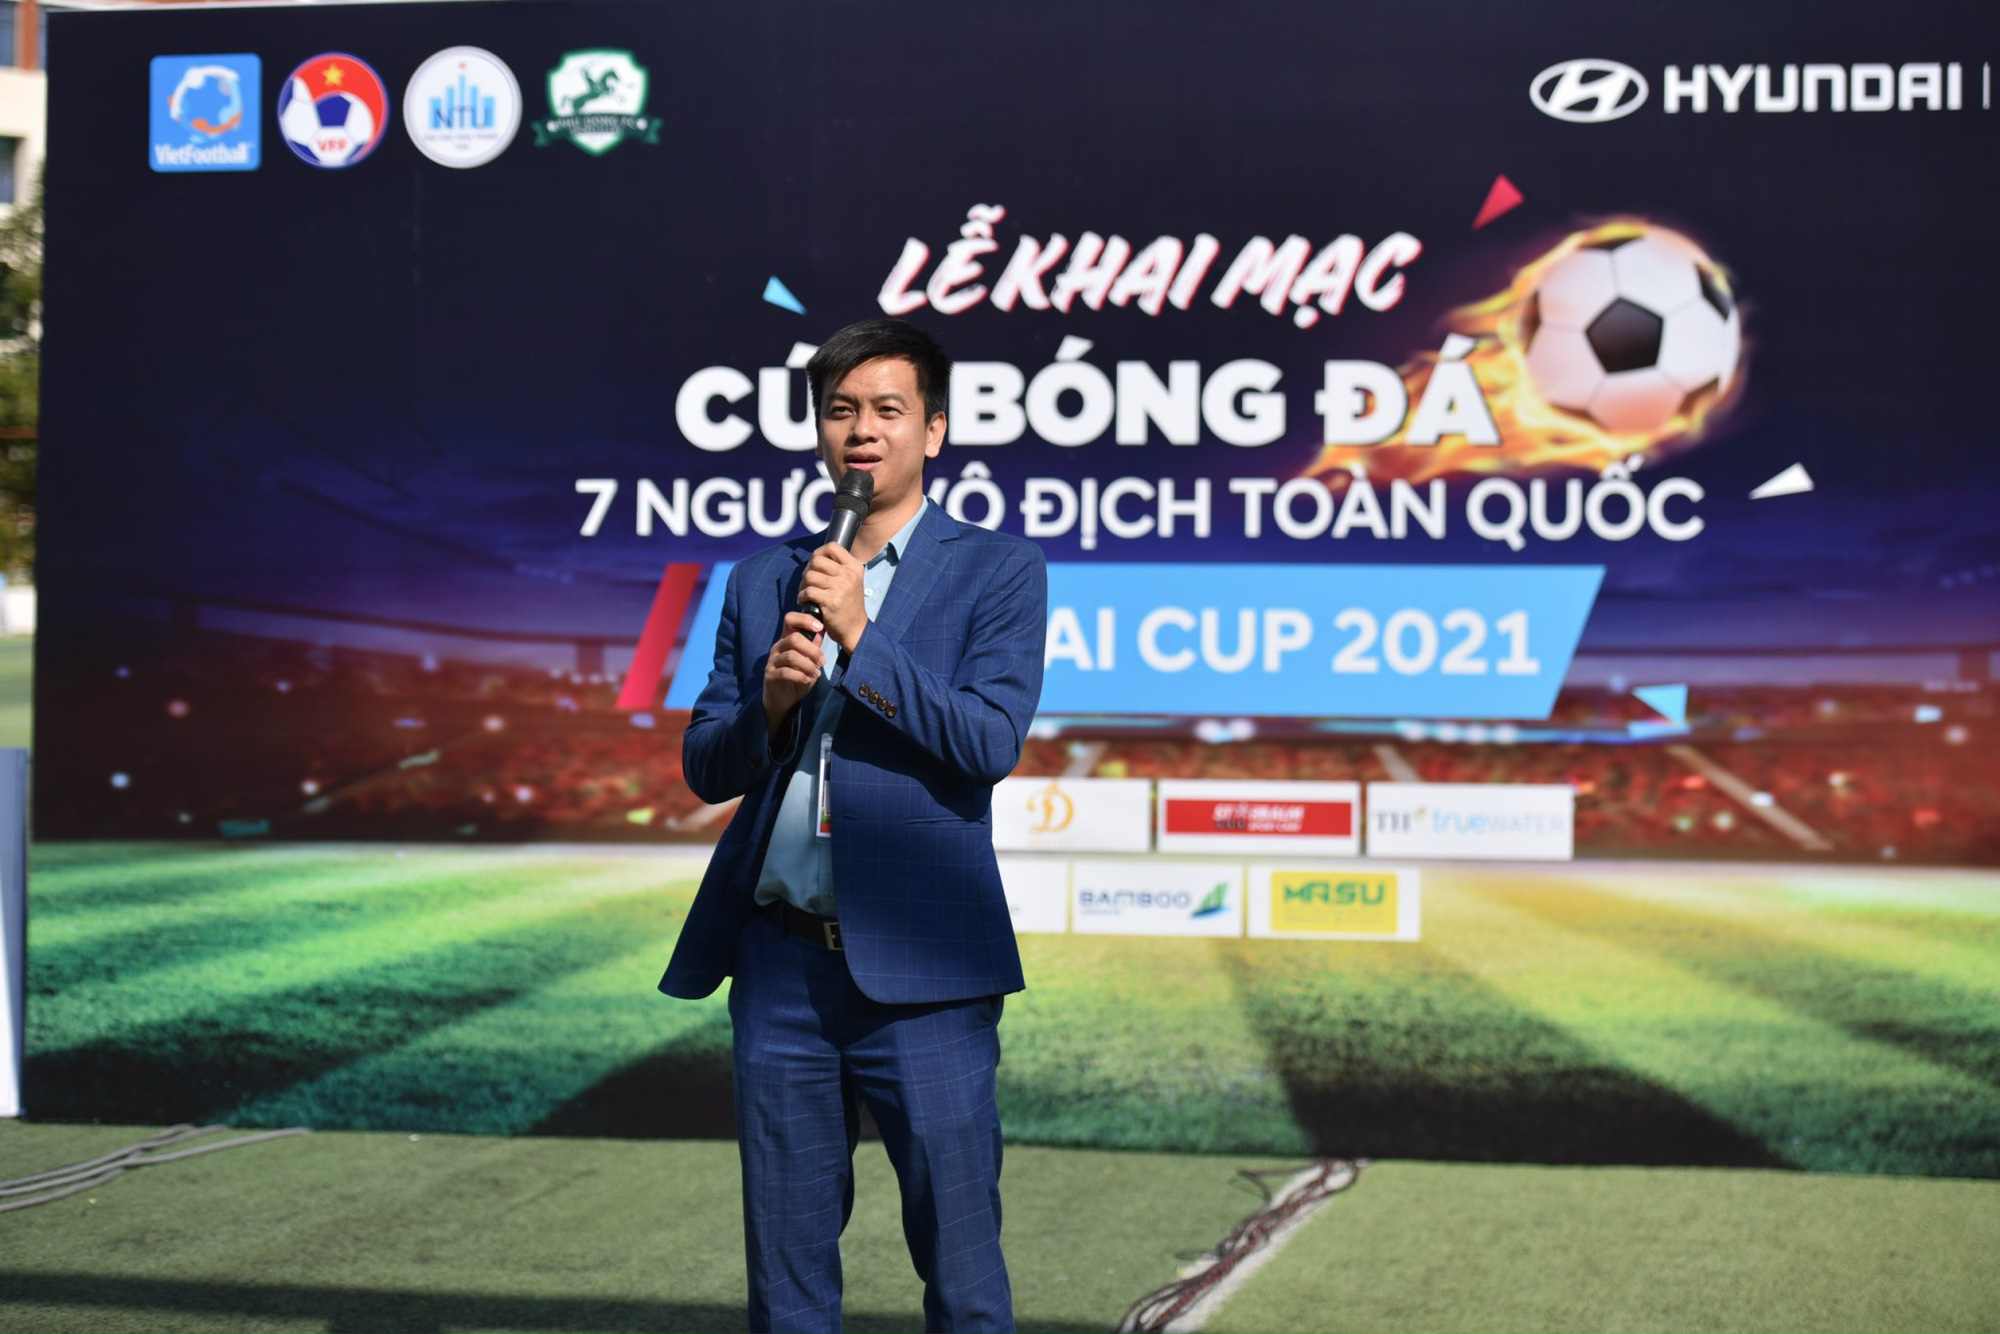 Đội vô địch bóng đá 7 người toàn quốc – Hyundai Cup 2021 nhận 60 triệu đồng tiền thưởng! - Ảnh 1.